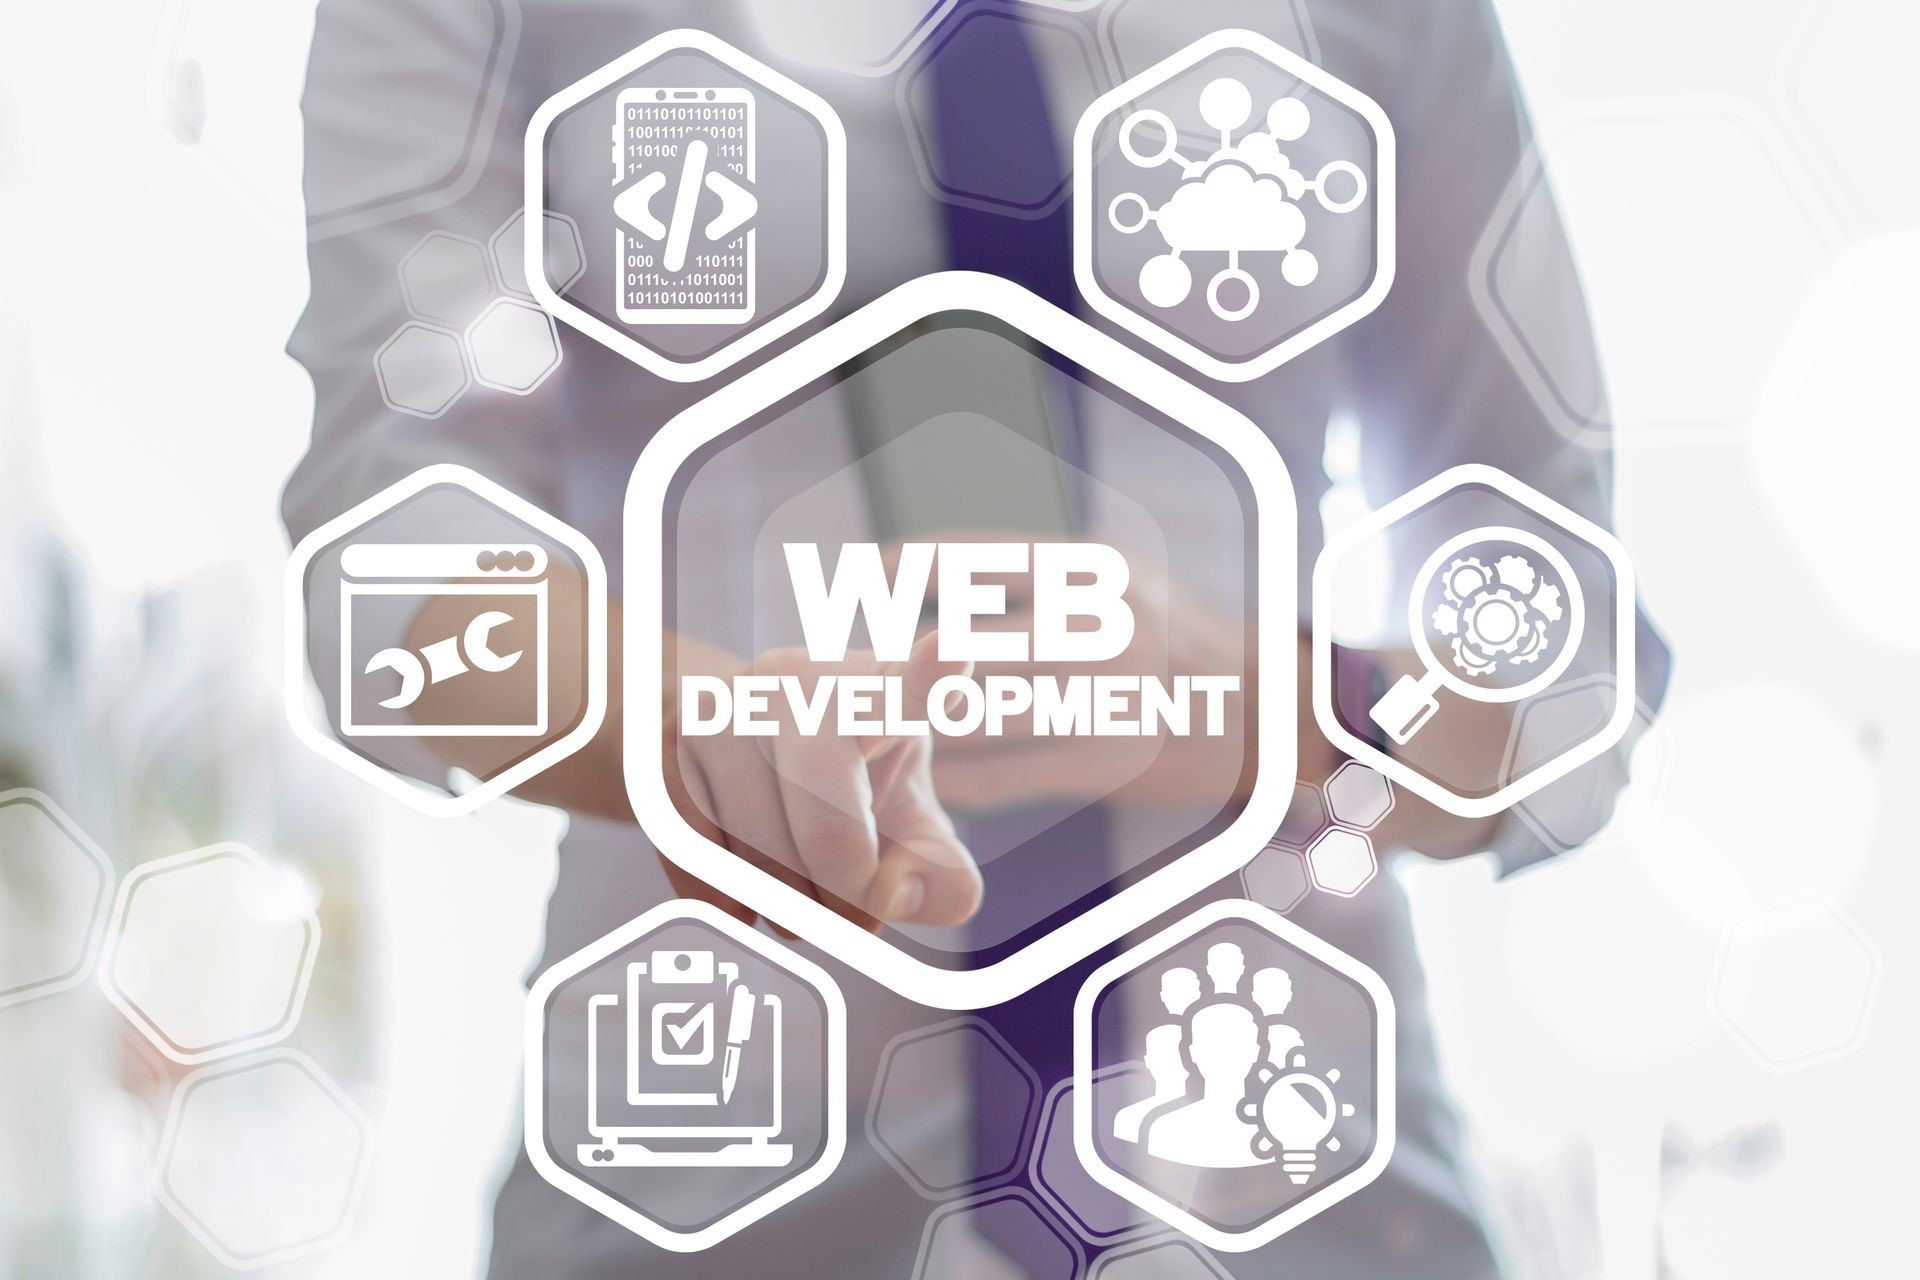 Web Development concept.